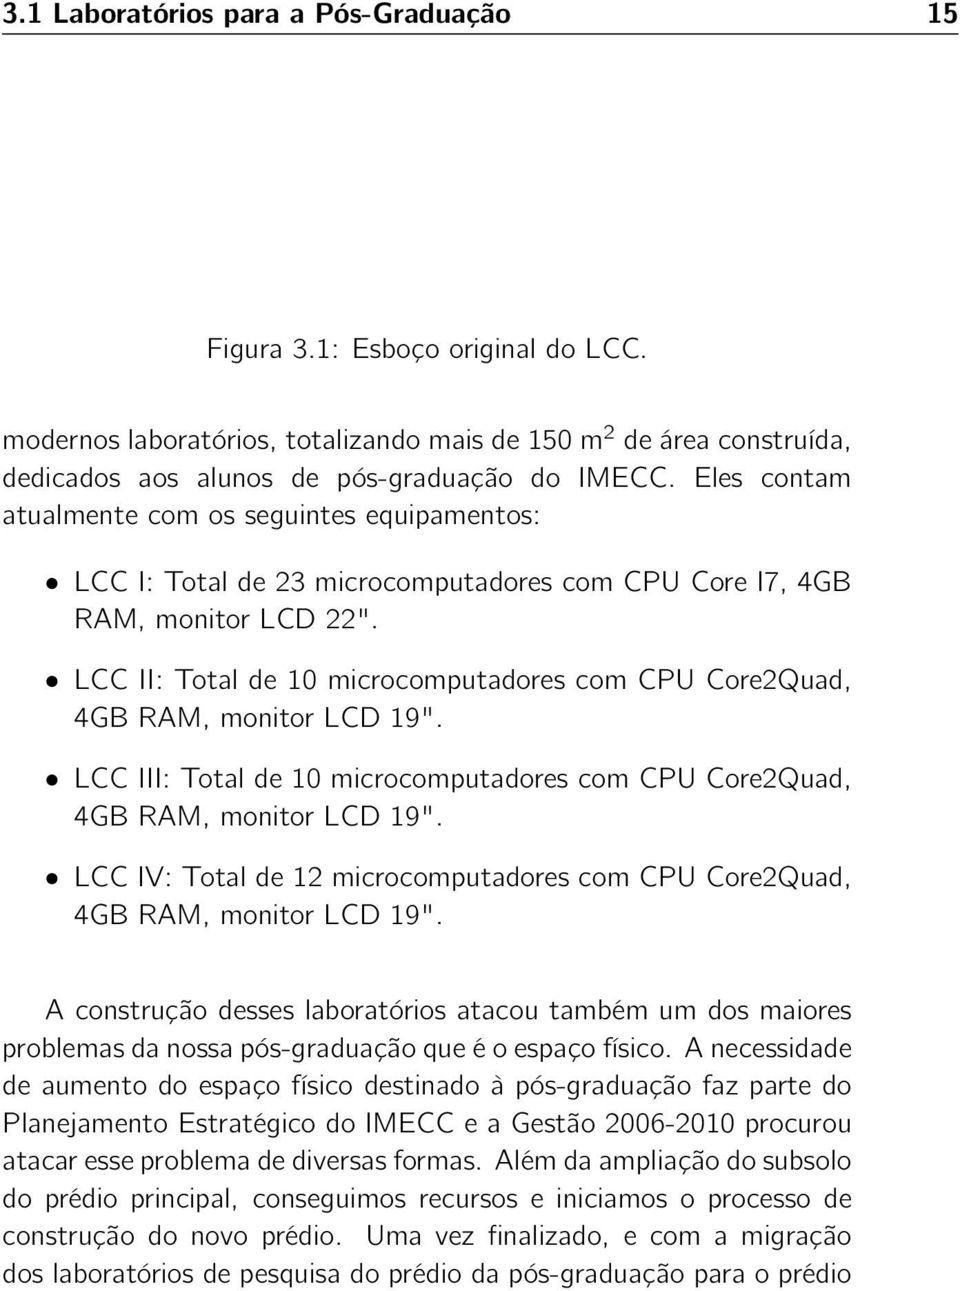 LCC II: Total de 10 microcomputadores com CPU Core2Quad, 4GB RAM, monitor LCD 19". LCC III: Total de 10 microcomputadores com CPU Core2Quad, 4GB RAM, monitor LCD 19".